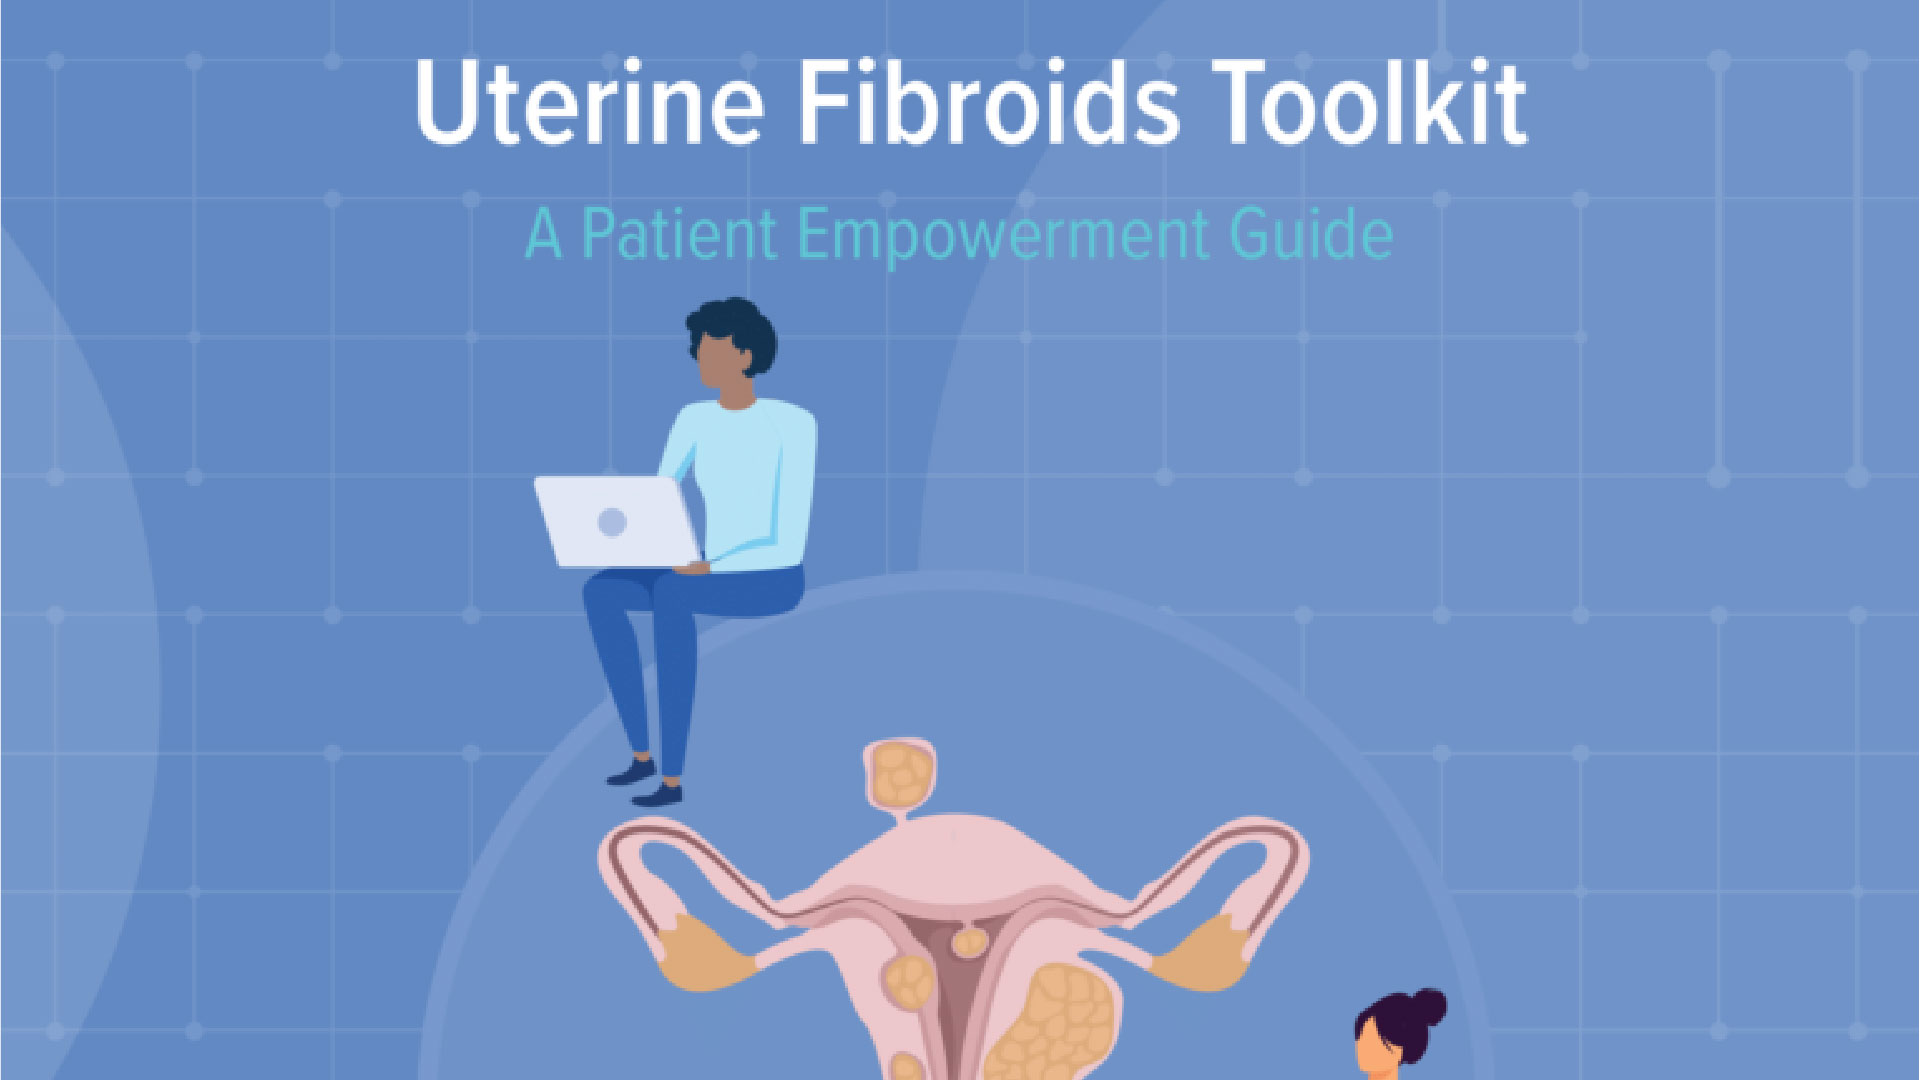 SWHR Uterine Fibroids Toolkit image